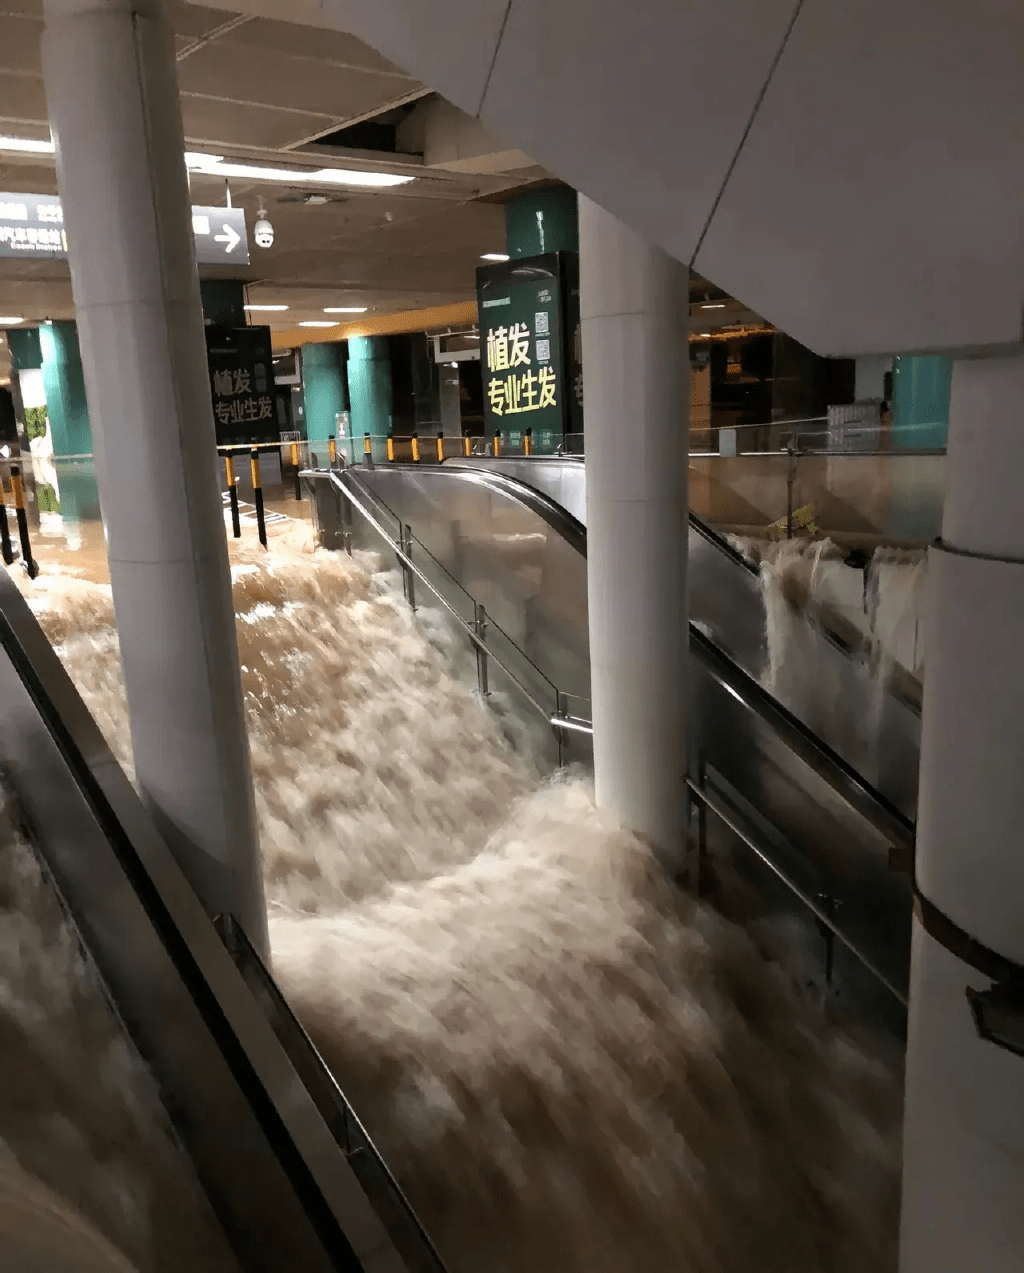 罗湖关口岸对出，深圳火车站负一樱，水浸情况严重，扶手电梯变成急流。